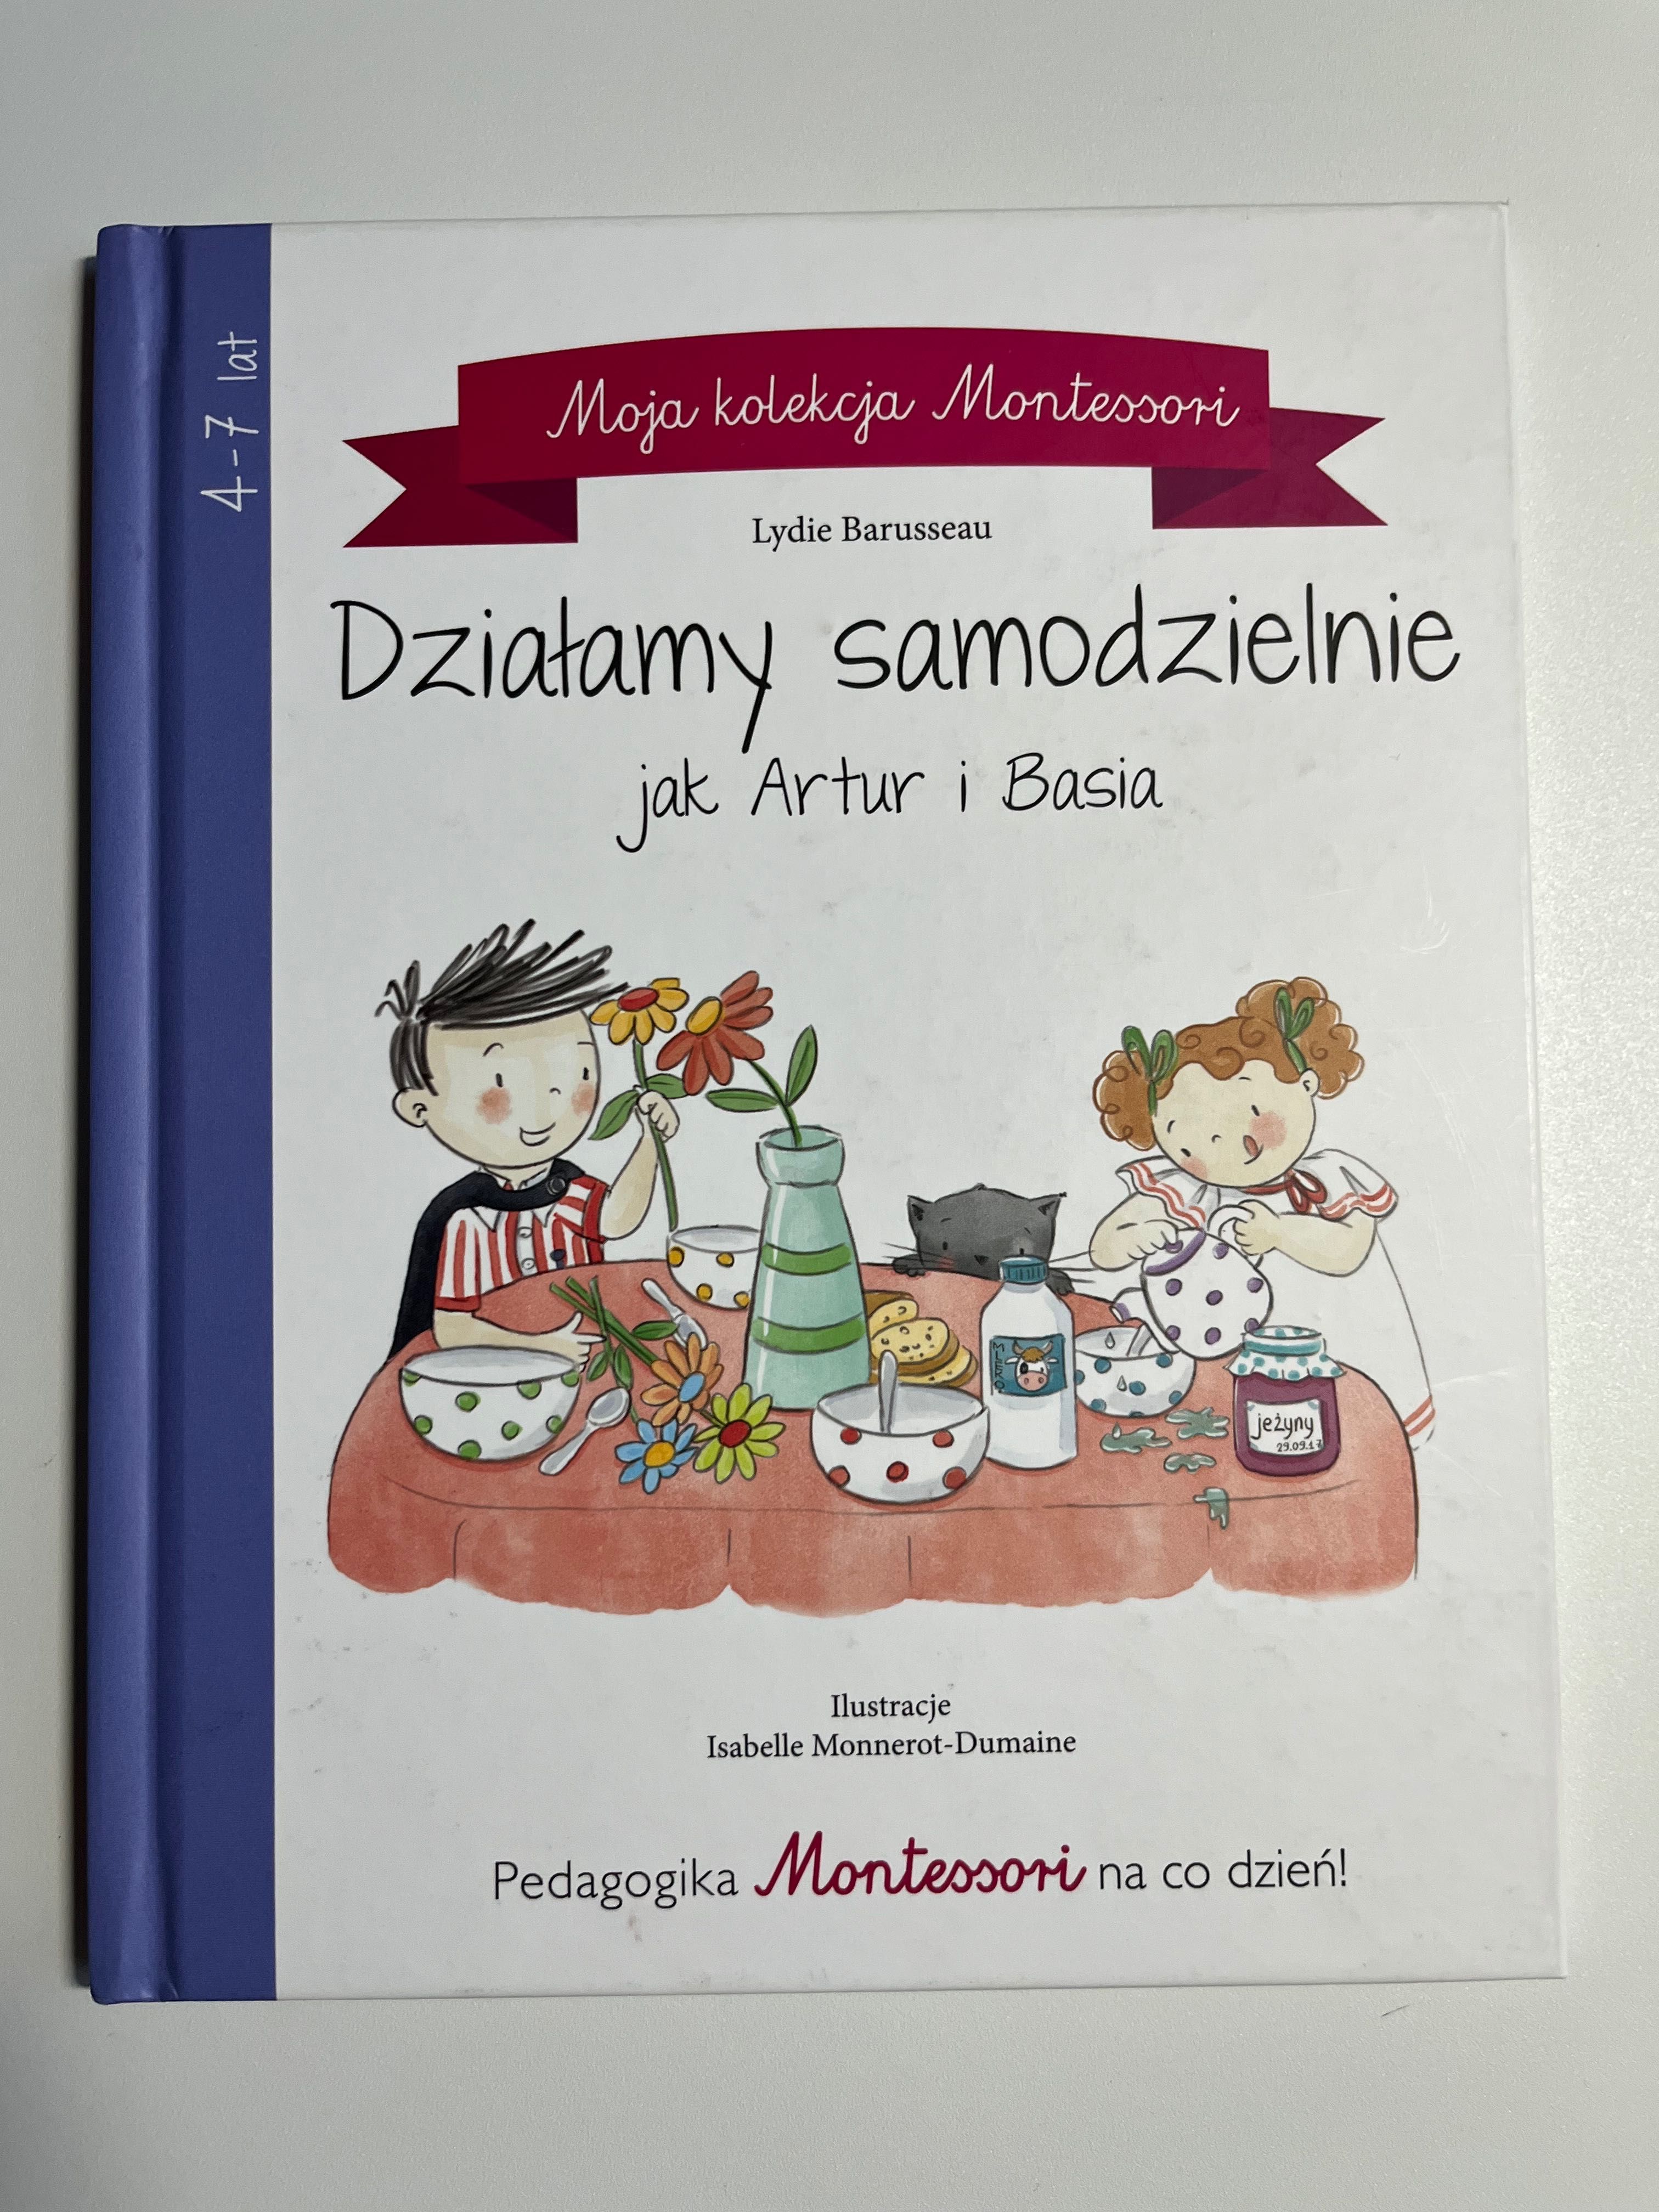 Książka Montessori